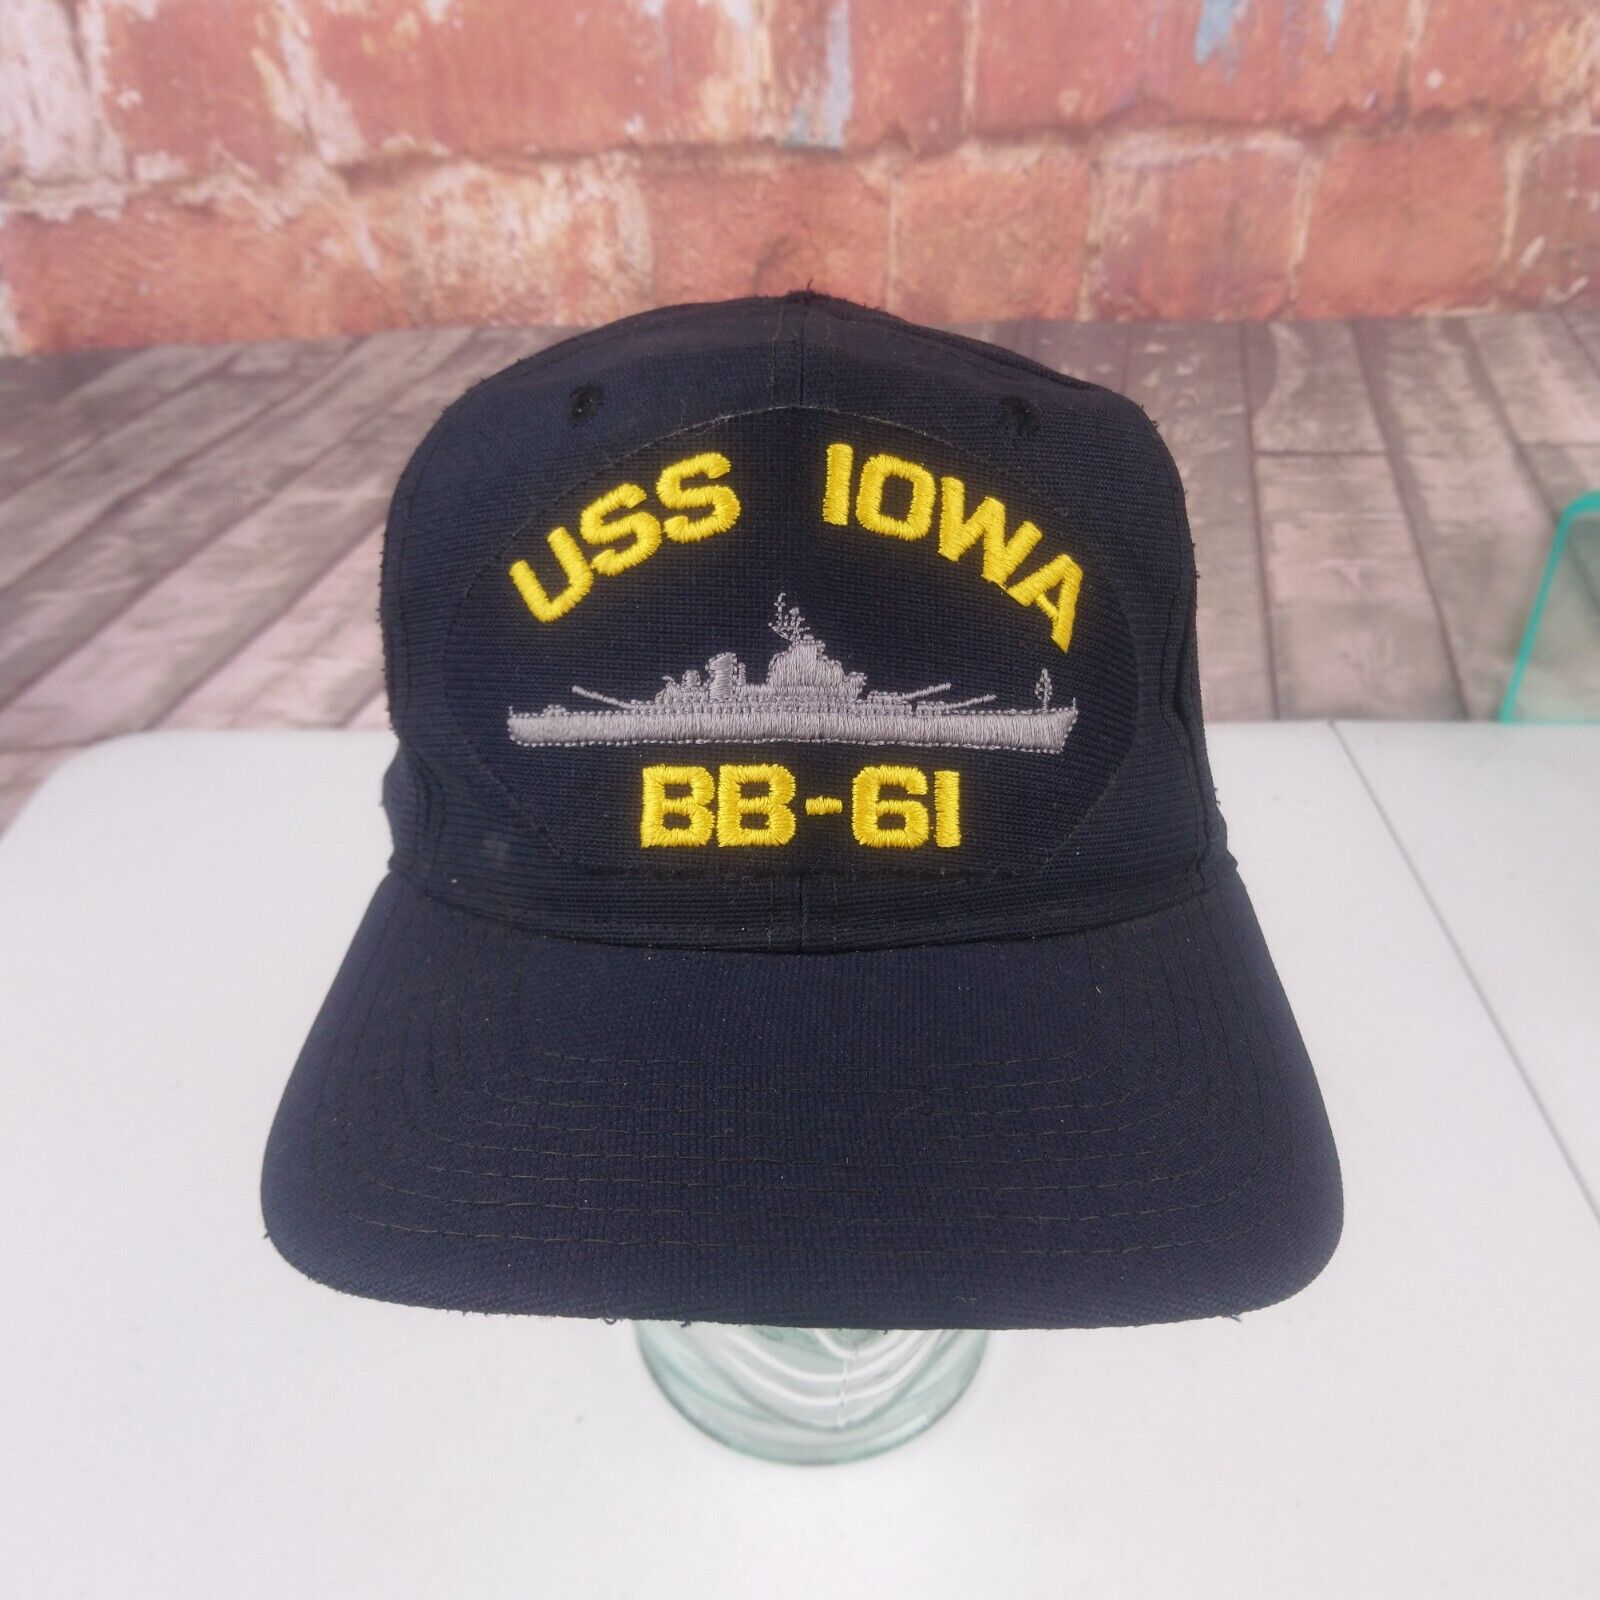 VTG USS Iowa BB-61 Uniform Baseball Hat Cover New Era